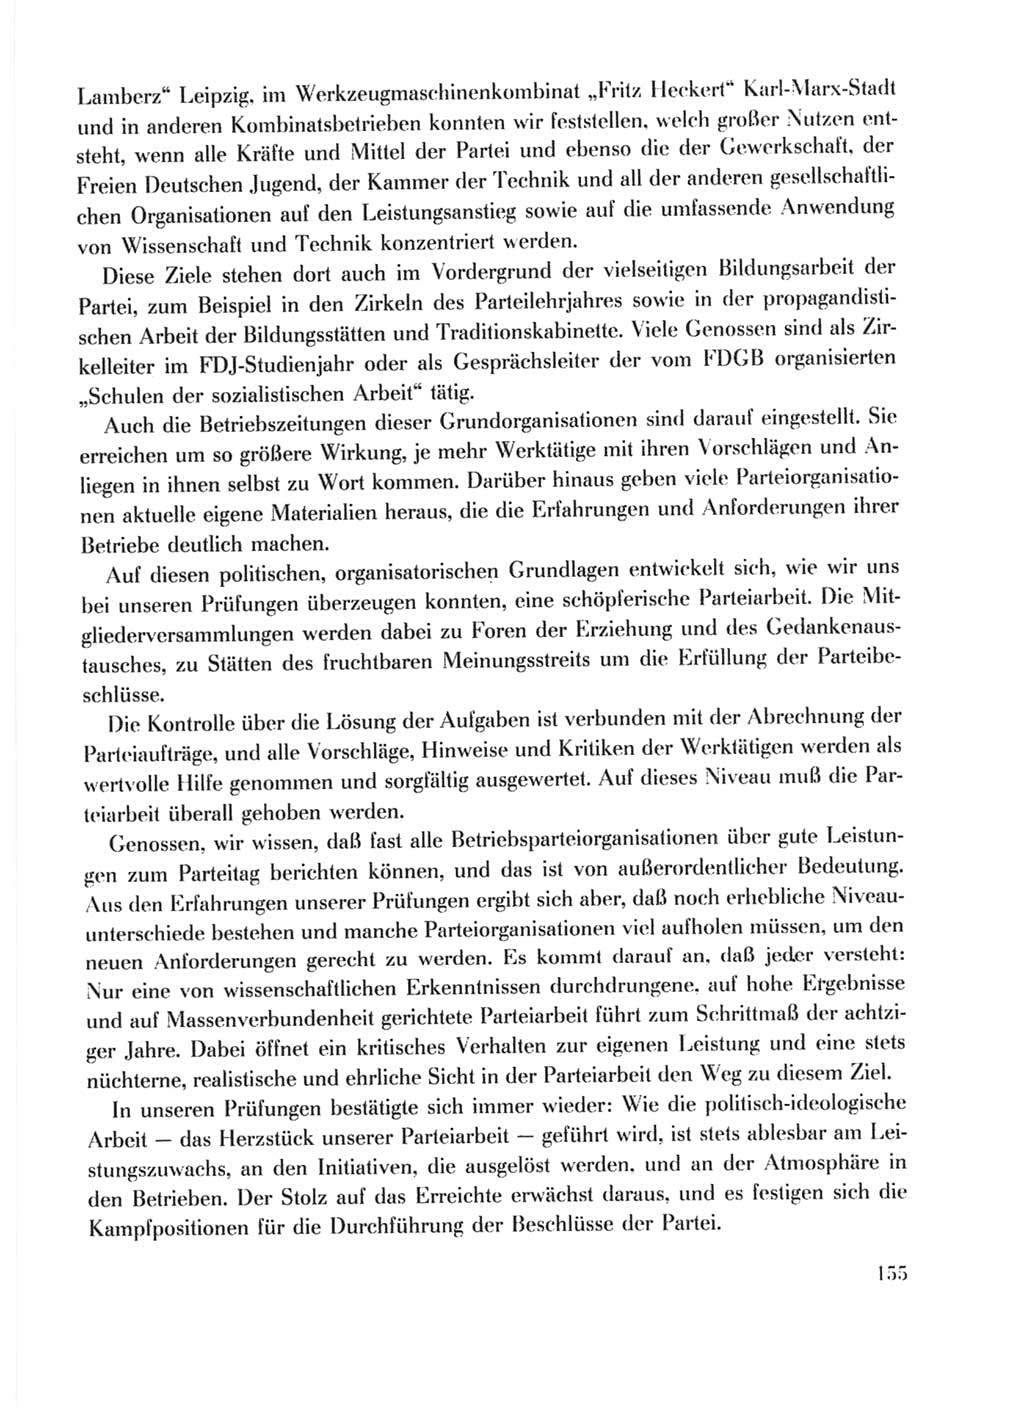 Protokoll der Verhandlungen des Ⅹ. Parteitages der Sozialistischen Einheitspartei Deutschlands (SED) [Deutsche Demokratische Republik (DDR)] 1981, Band 1, Seite 155 (Prot. Verh. Ⅹ. PT SED DDR 1981, Bd. 1, S. 155)